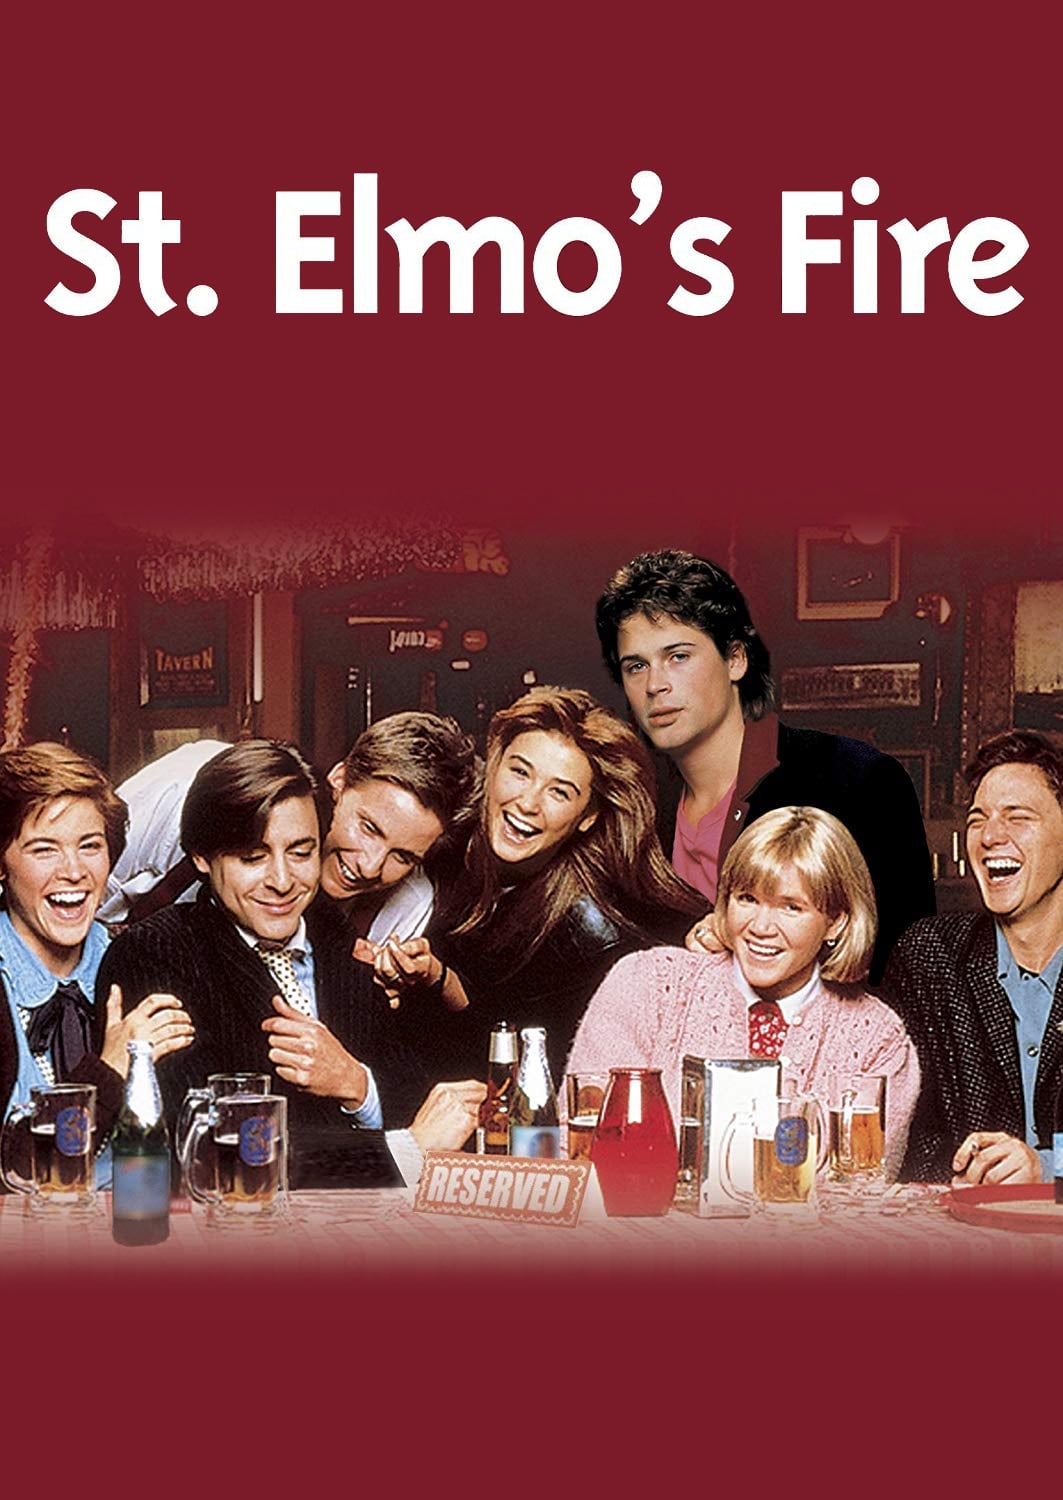 St. Elmo's Fire.